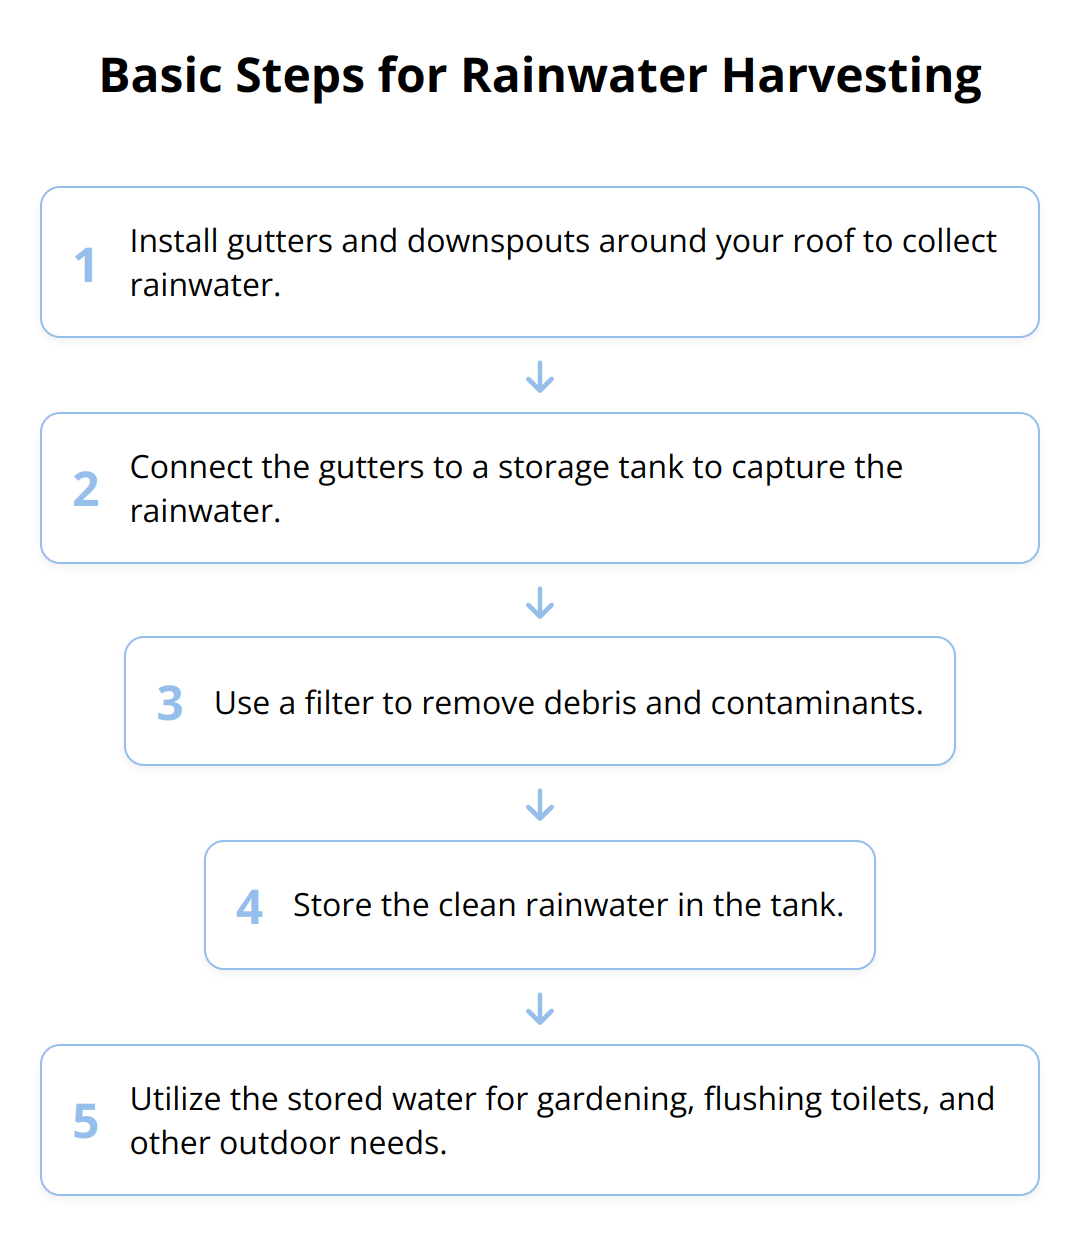 Flow Chart - Basic Steps for Rainwater Harvesting